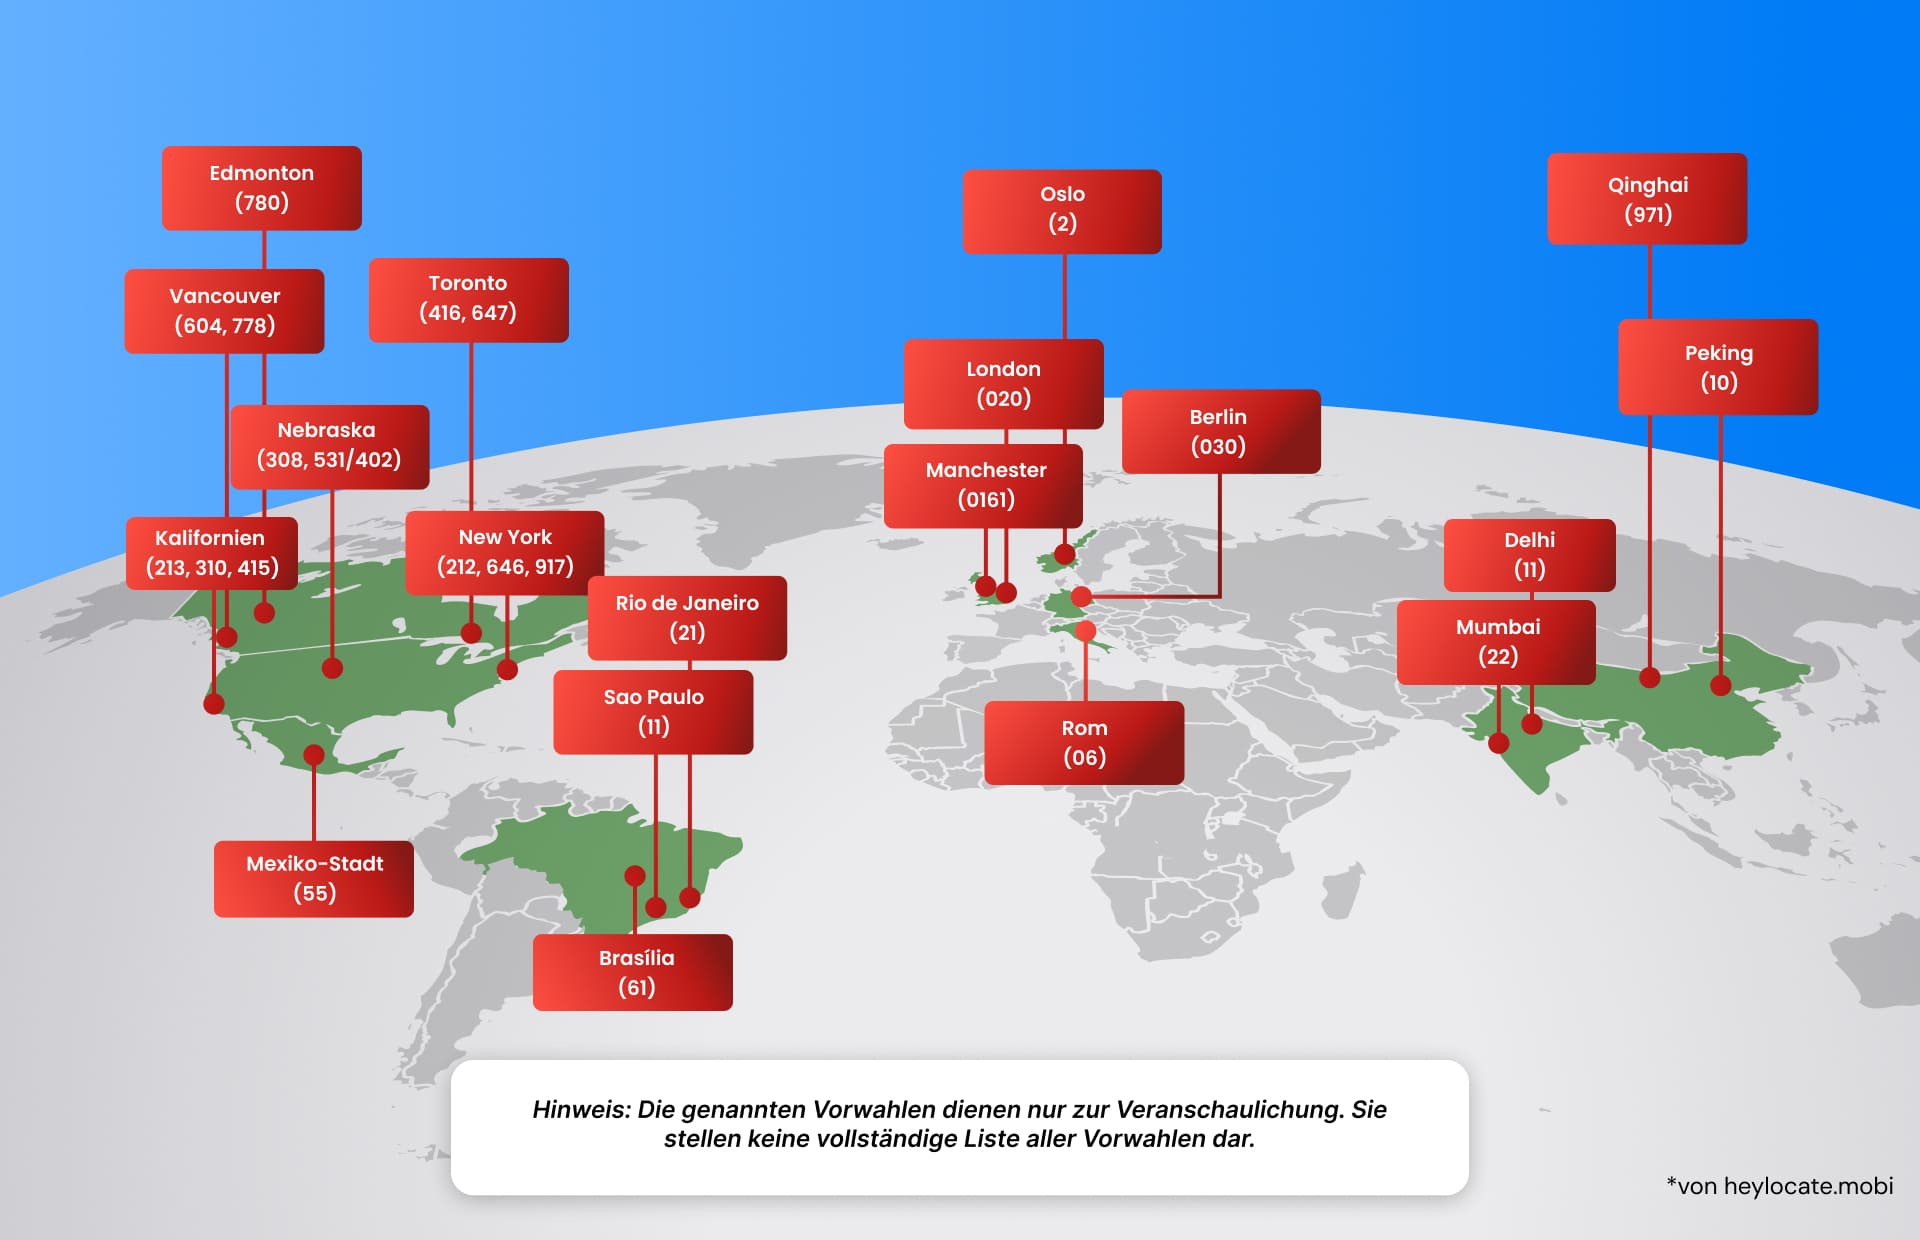 Illustrative Weltkarte, die verschiedene globale Vorwahlen für Städte und Regionen hervorhebt und das Konzept einer Vorwahl erklärt